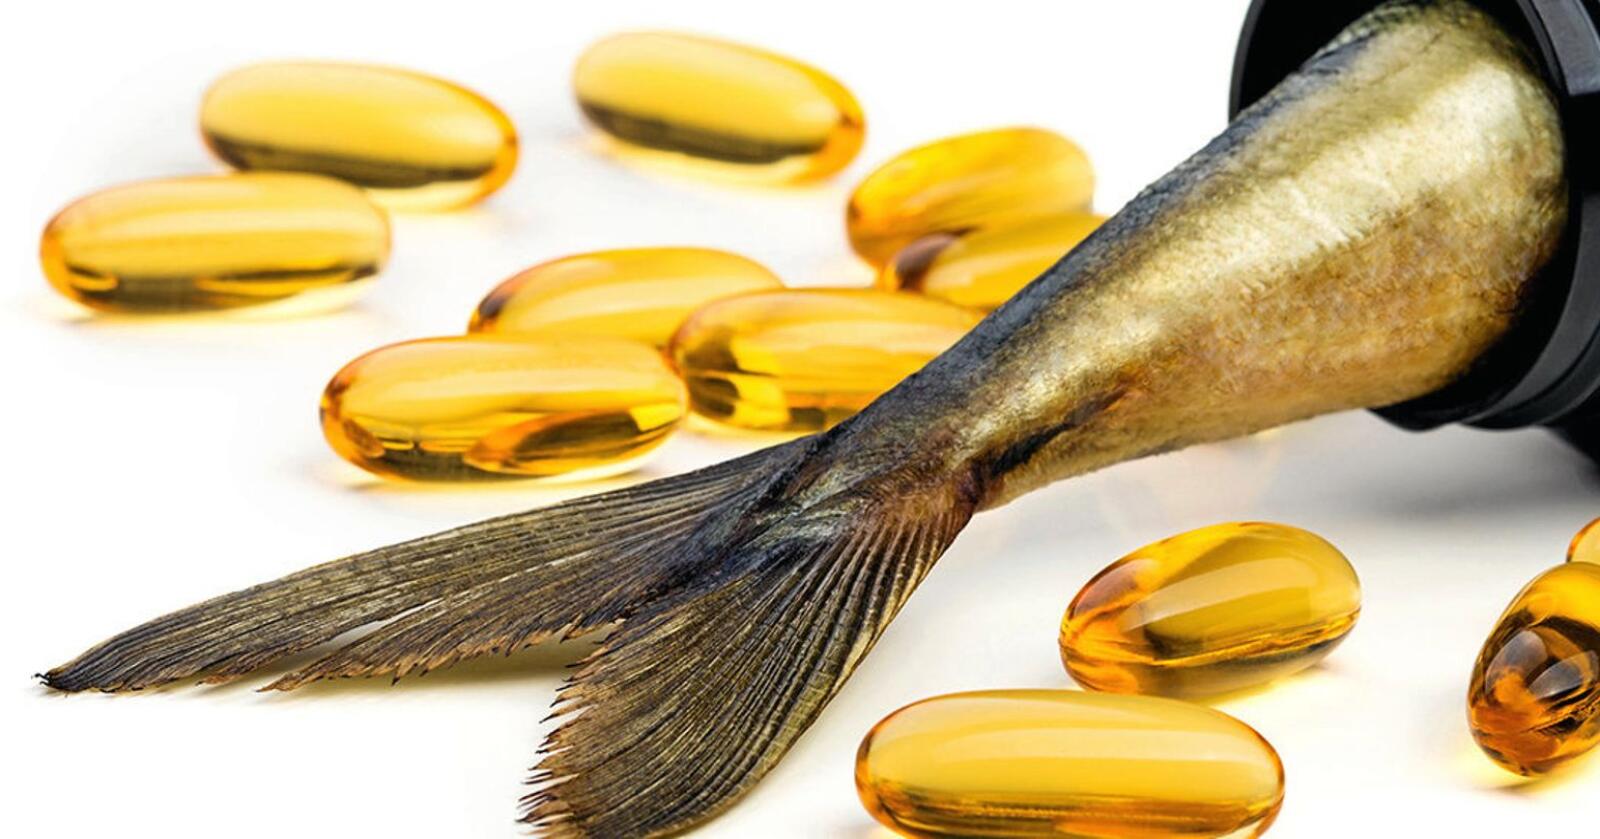 Det er flere måter å øke tilgangen på omega-3. En vei er å bruke fiskeavfall i større grad. Foto: NTB scanpix